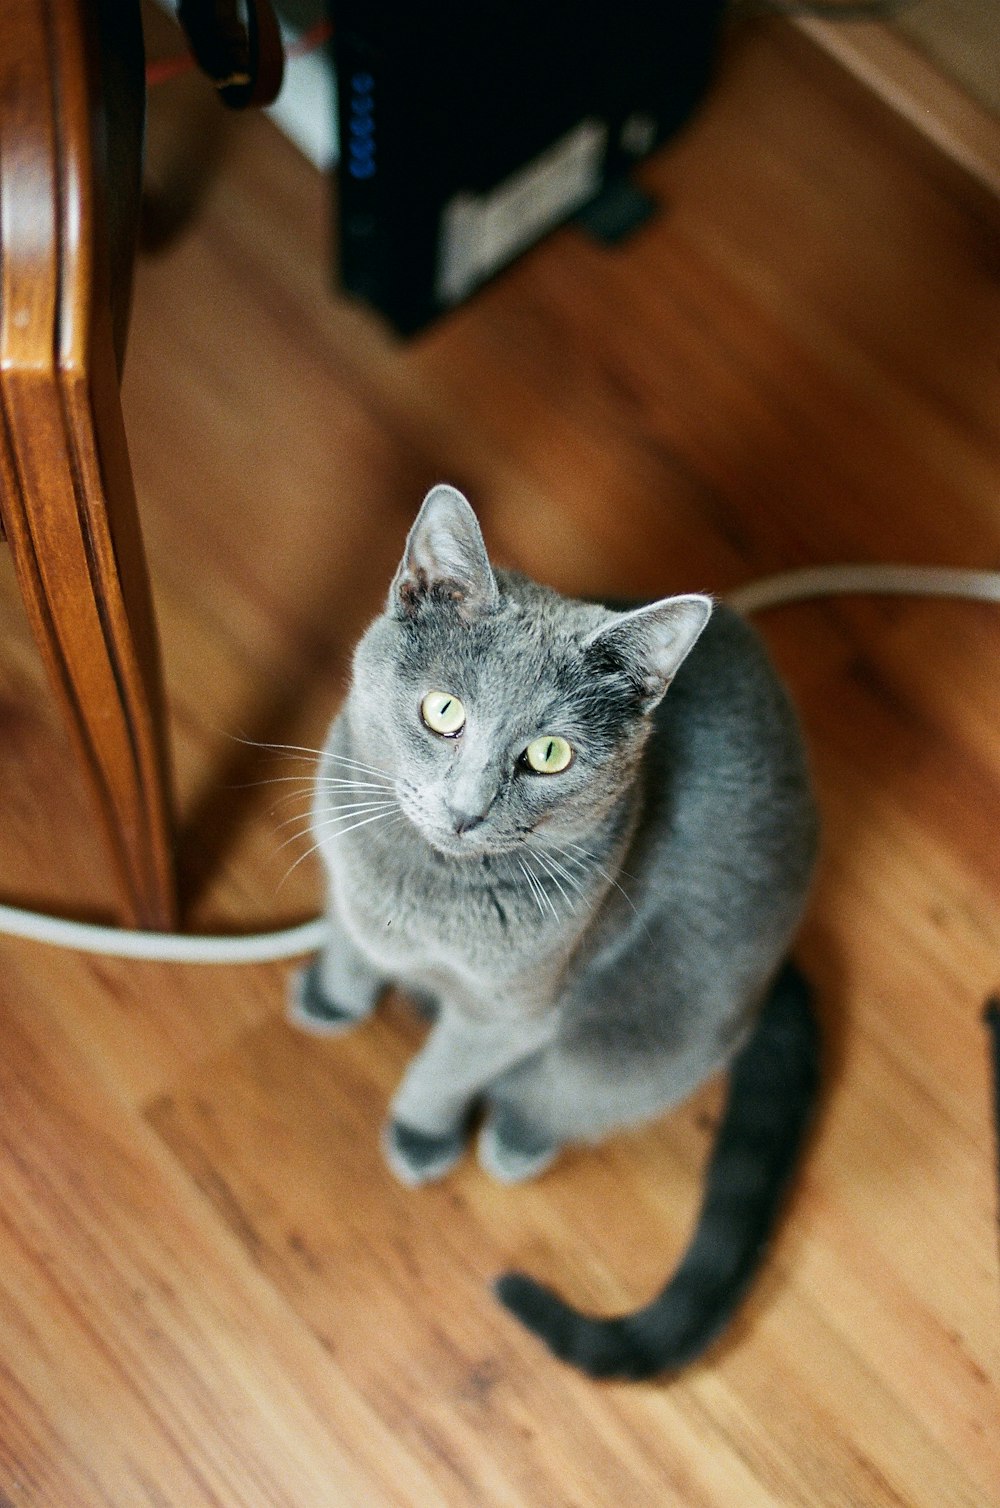 russian blue cat on brown wooden floor